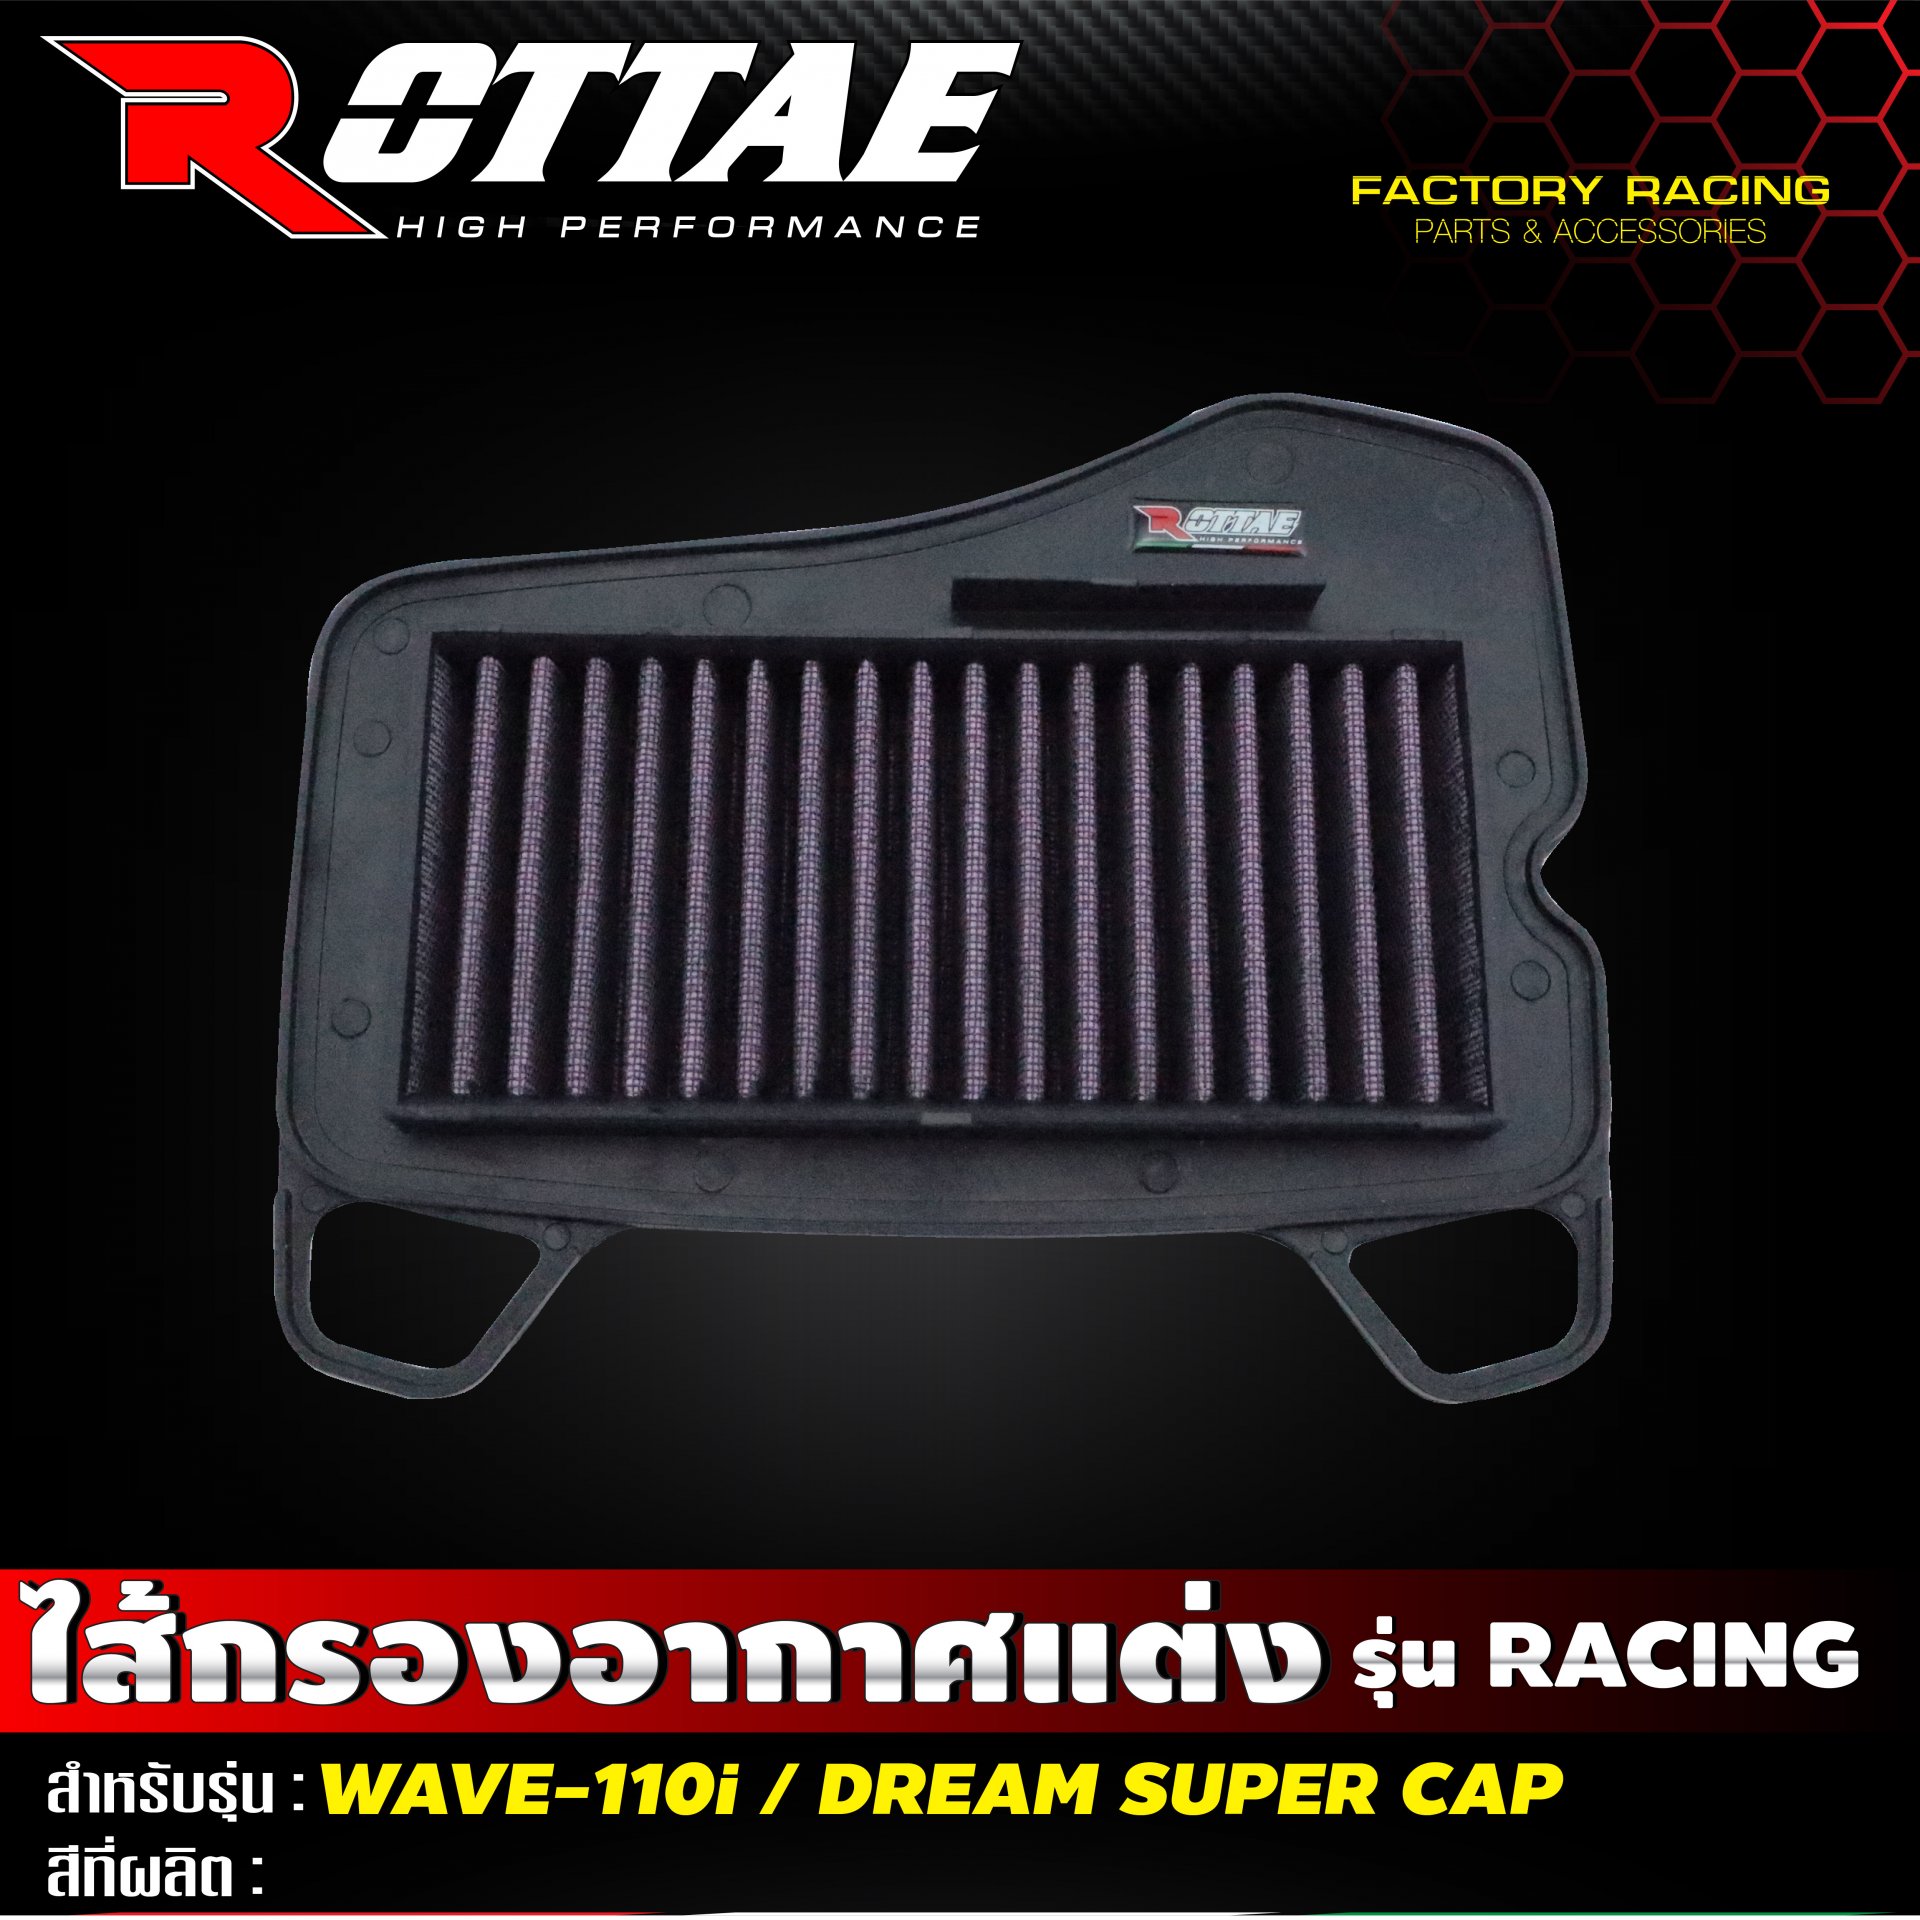 กรองอากาศแต่ง Racing #WAVE-110 i / DREAM SUPER CAP ROTTAE